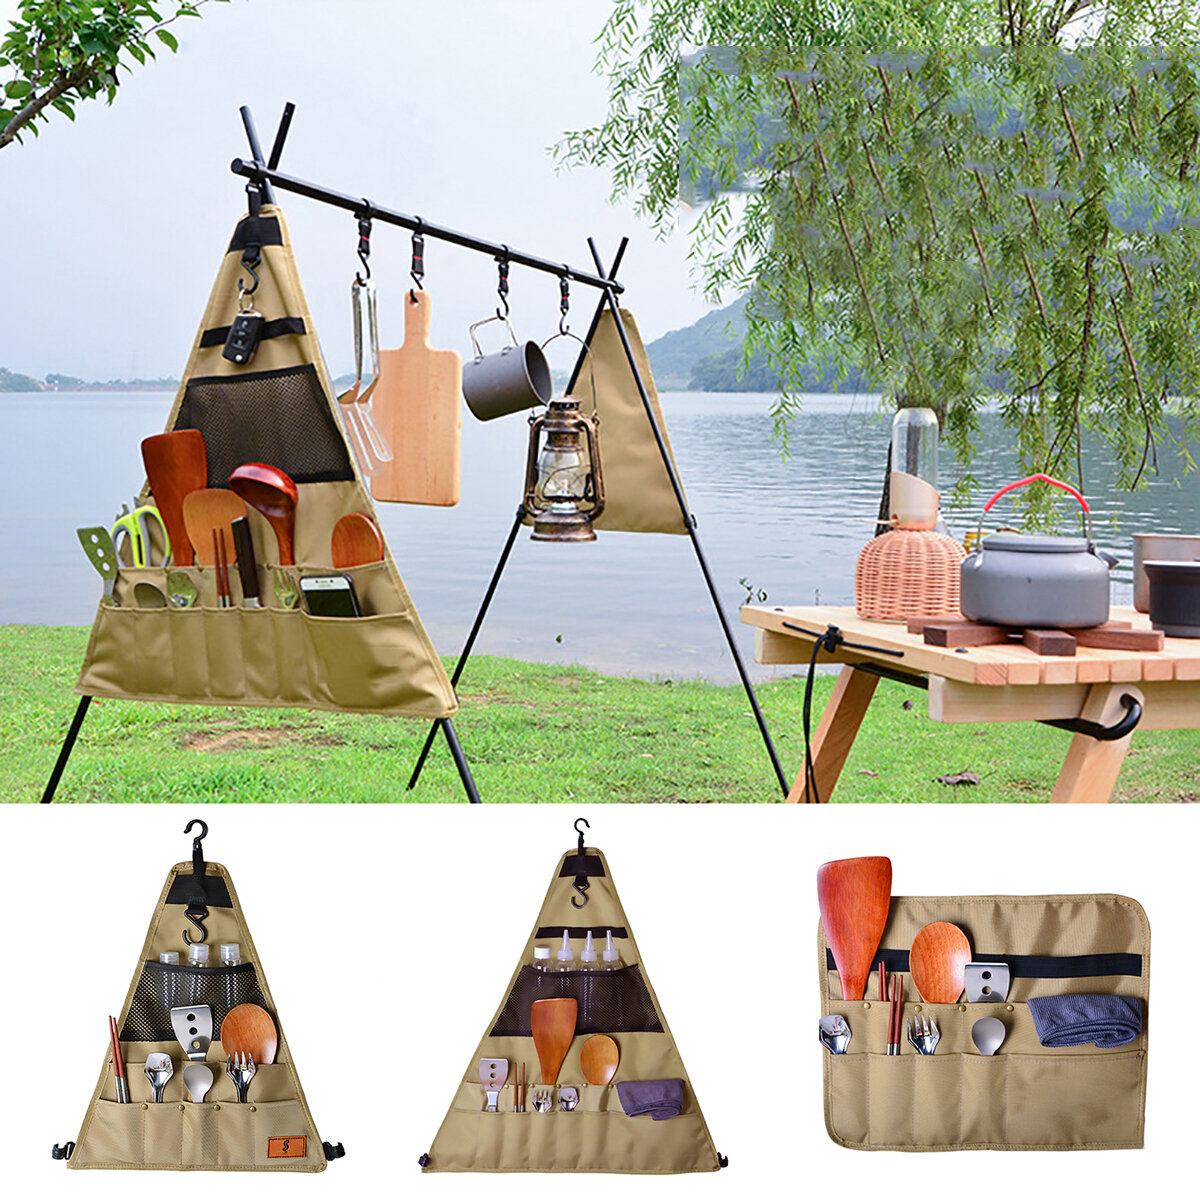 Bolsa de almacenamiento de utensilios de mesa de tela Oxford 900D para camping, picnic, barbacoa, triángulo/rectángulo para colgar al aire libre.